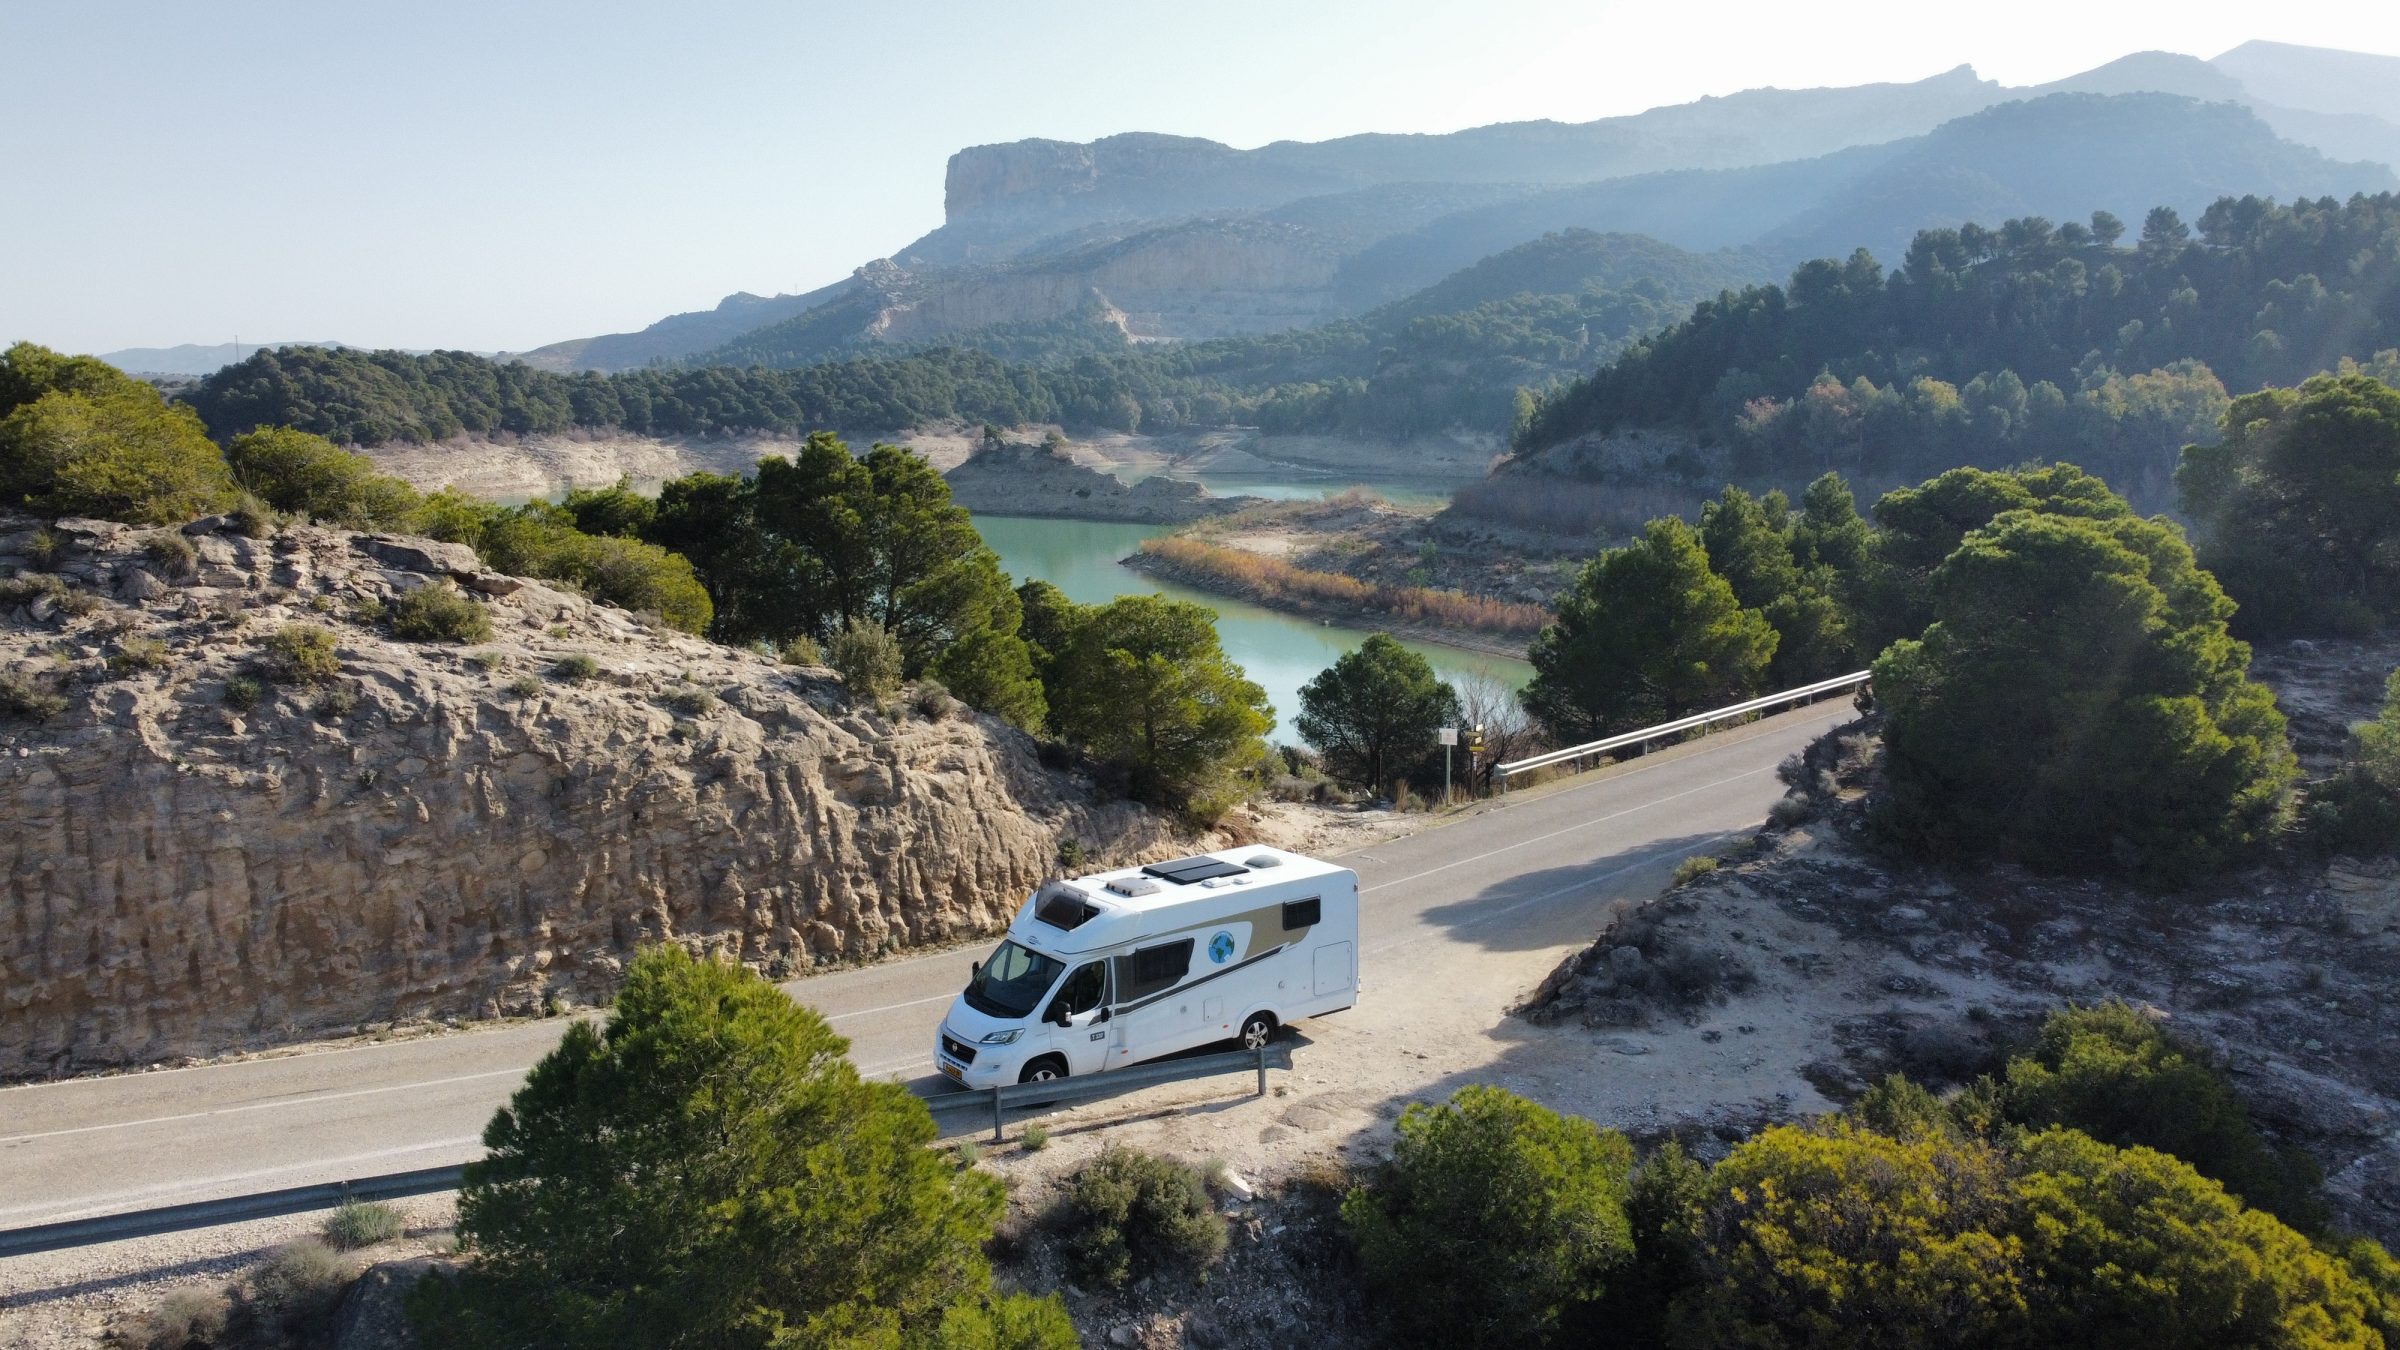 De camper in een prachtig landschap | Camper tips en bezienswaardigheden Zuid-Spanje